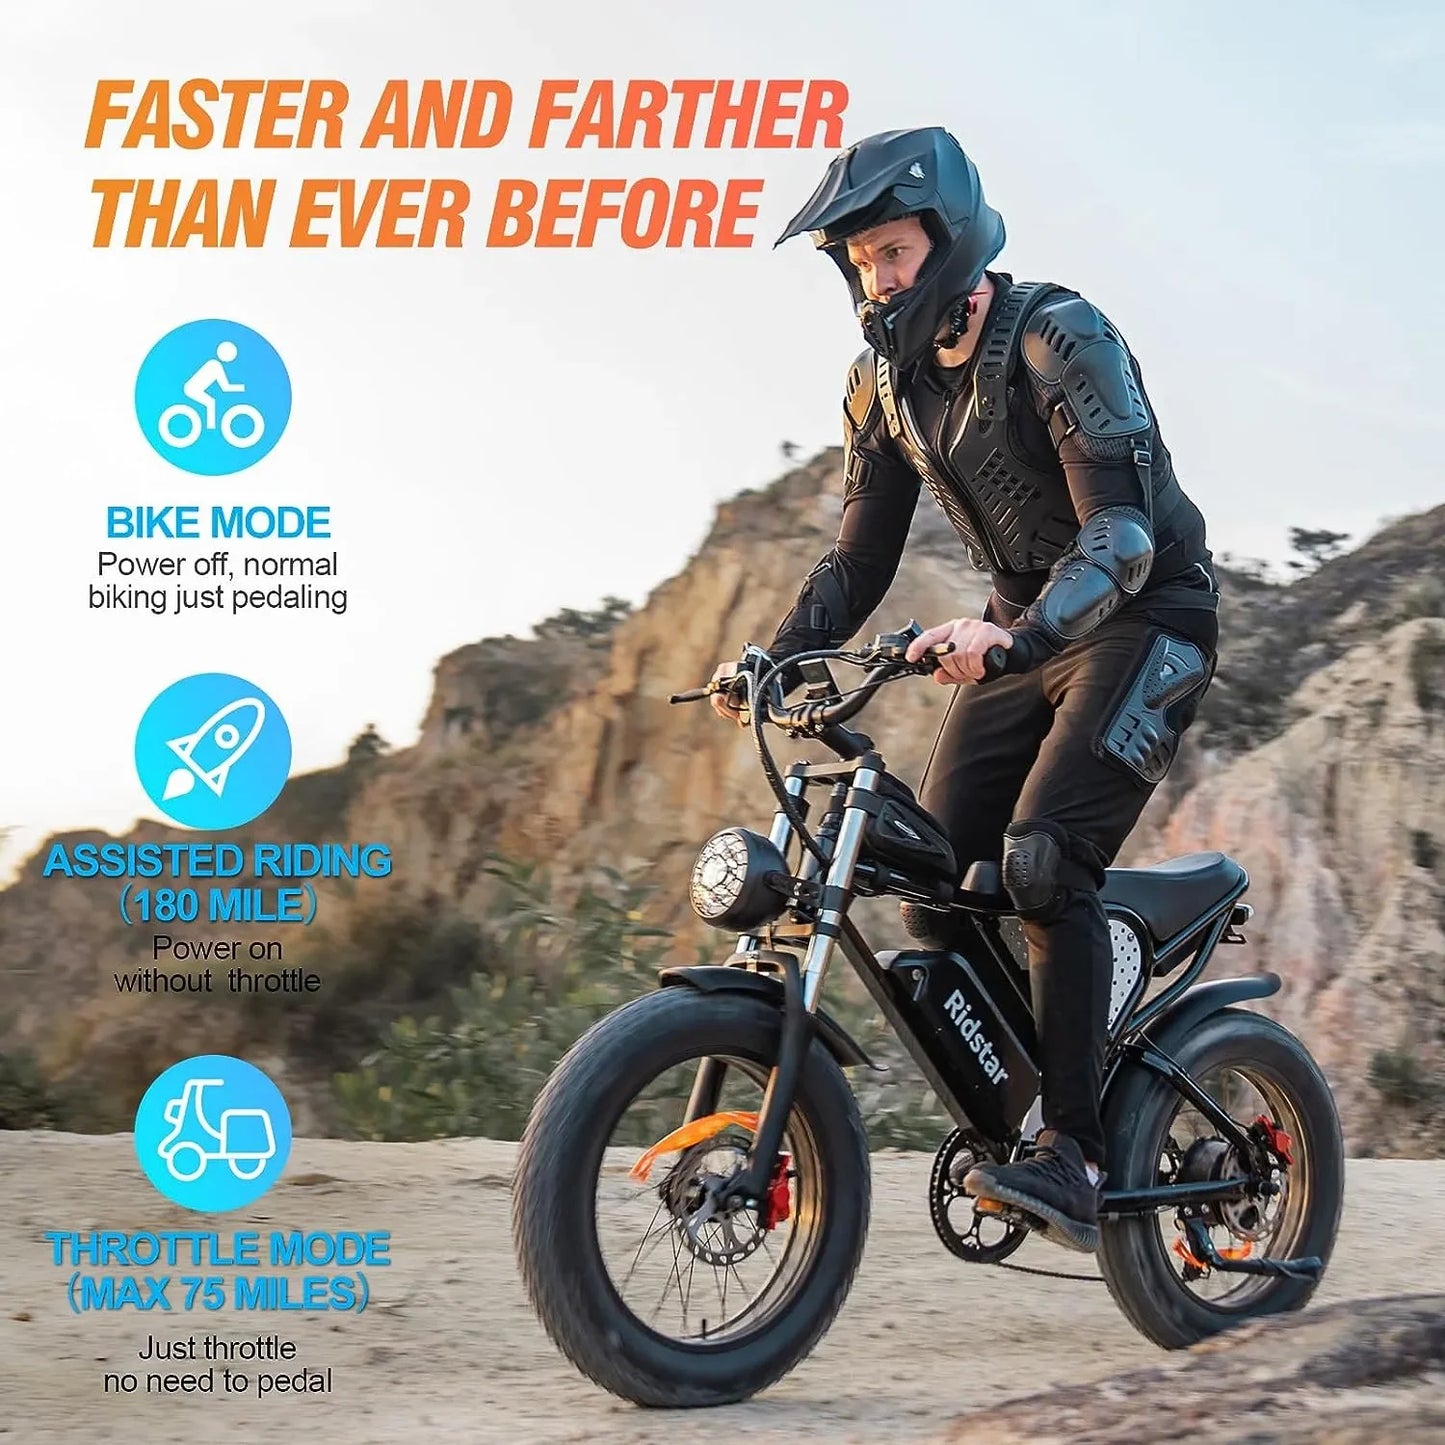 Electric Motorcycle, Dirt Bike 50-180 Miles